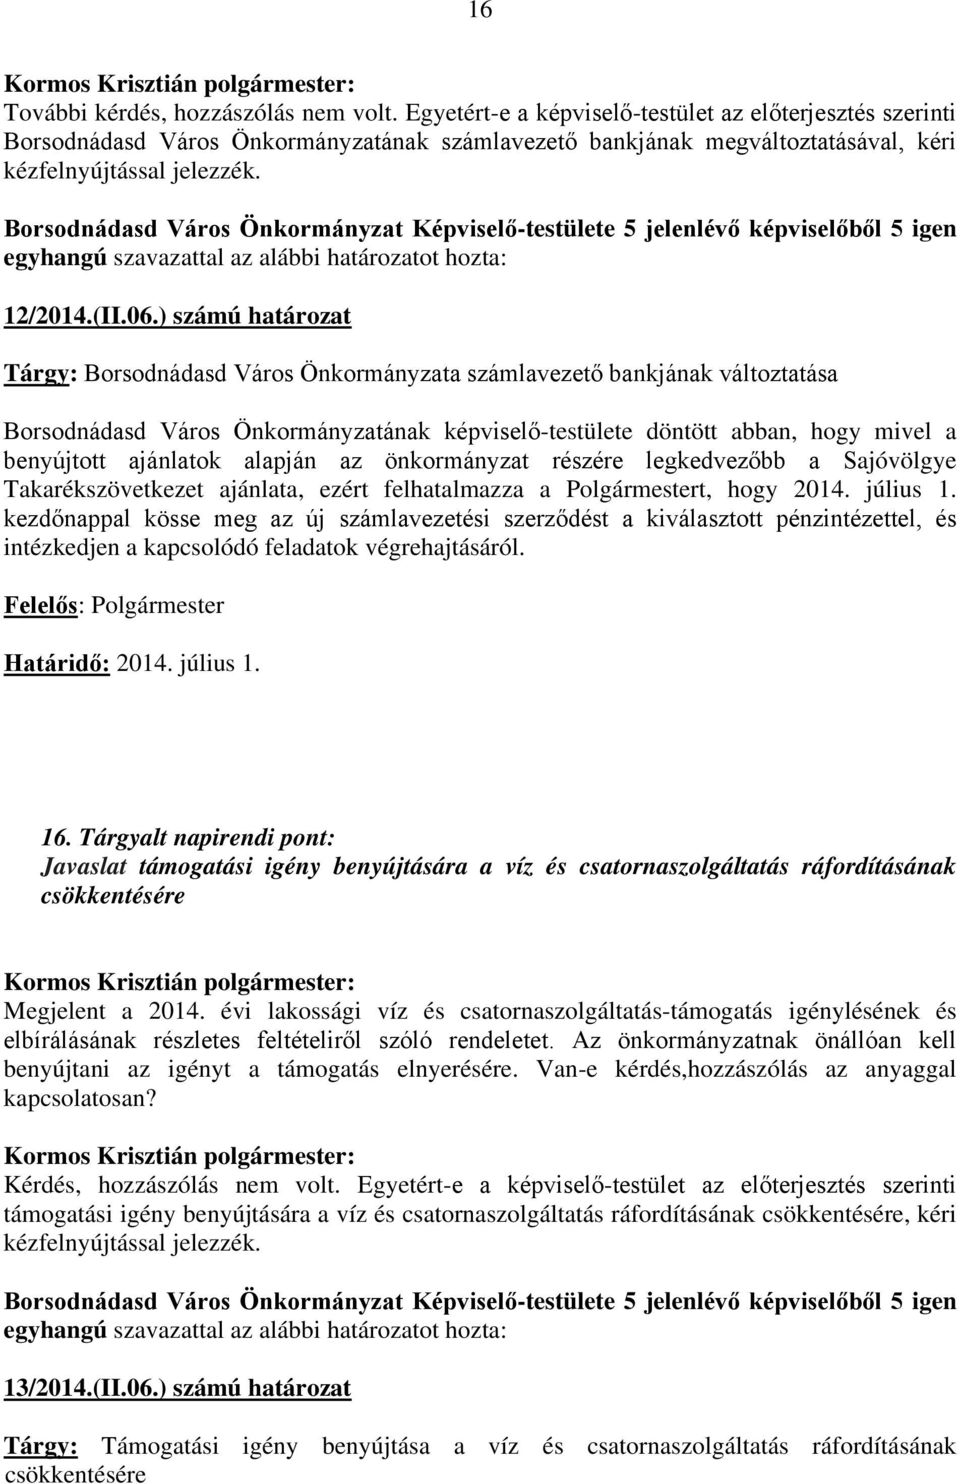 ) számú határozat Tárgy: Borsodnádasd Város Önkormányzata számlavezető bankjának változtatása Borsodnádasd Város Önkormányzatának képviselő-testülete döntött abban, hogy mivel a benyújtott ajánlatok